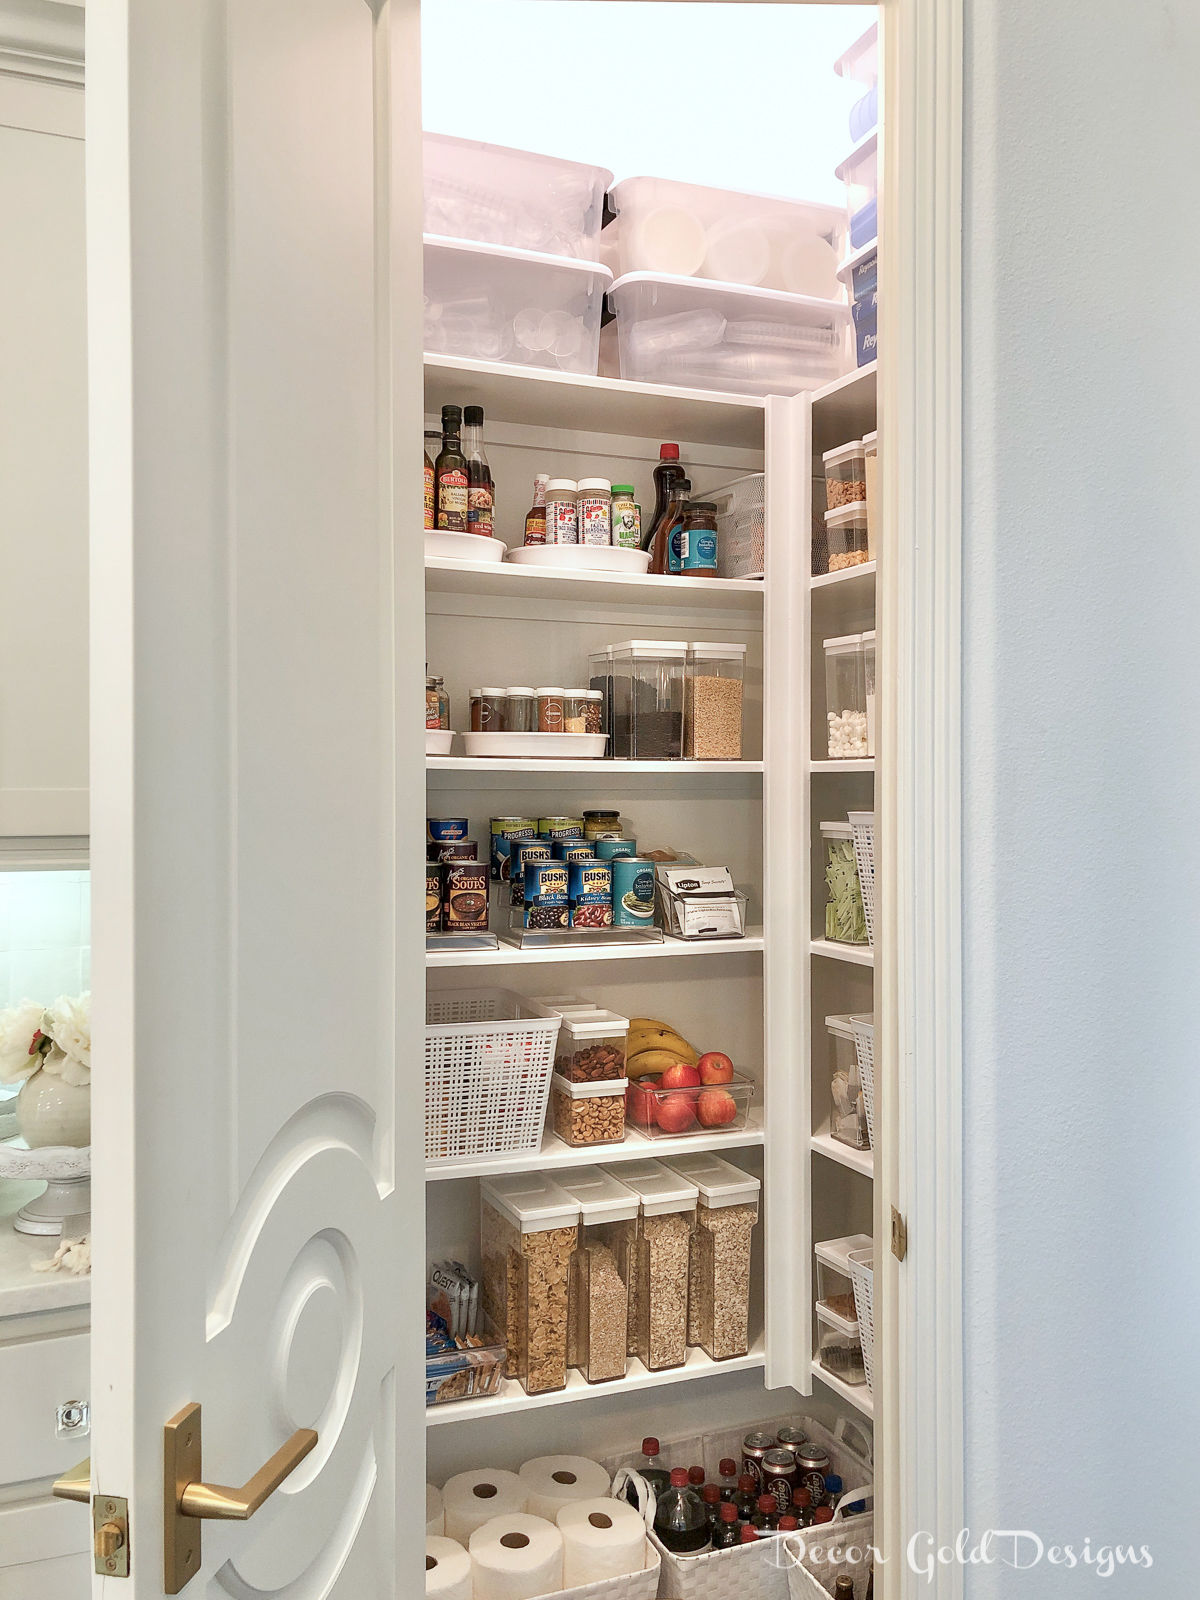 Beautifully organized kitchen pantry